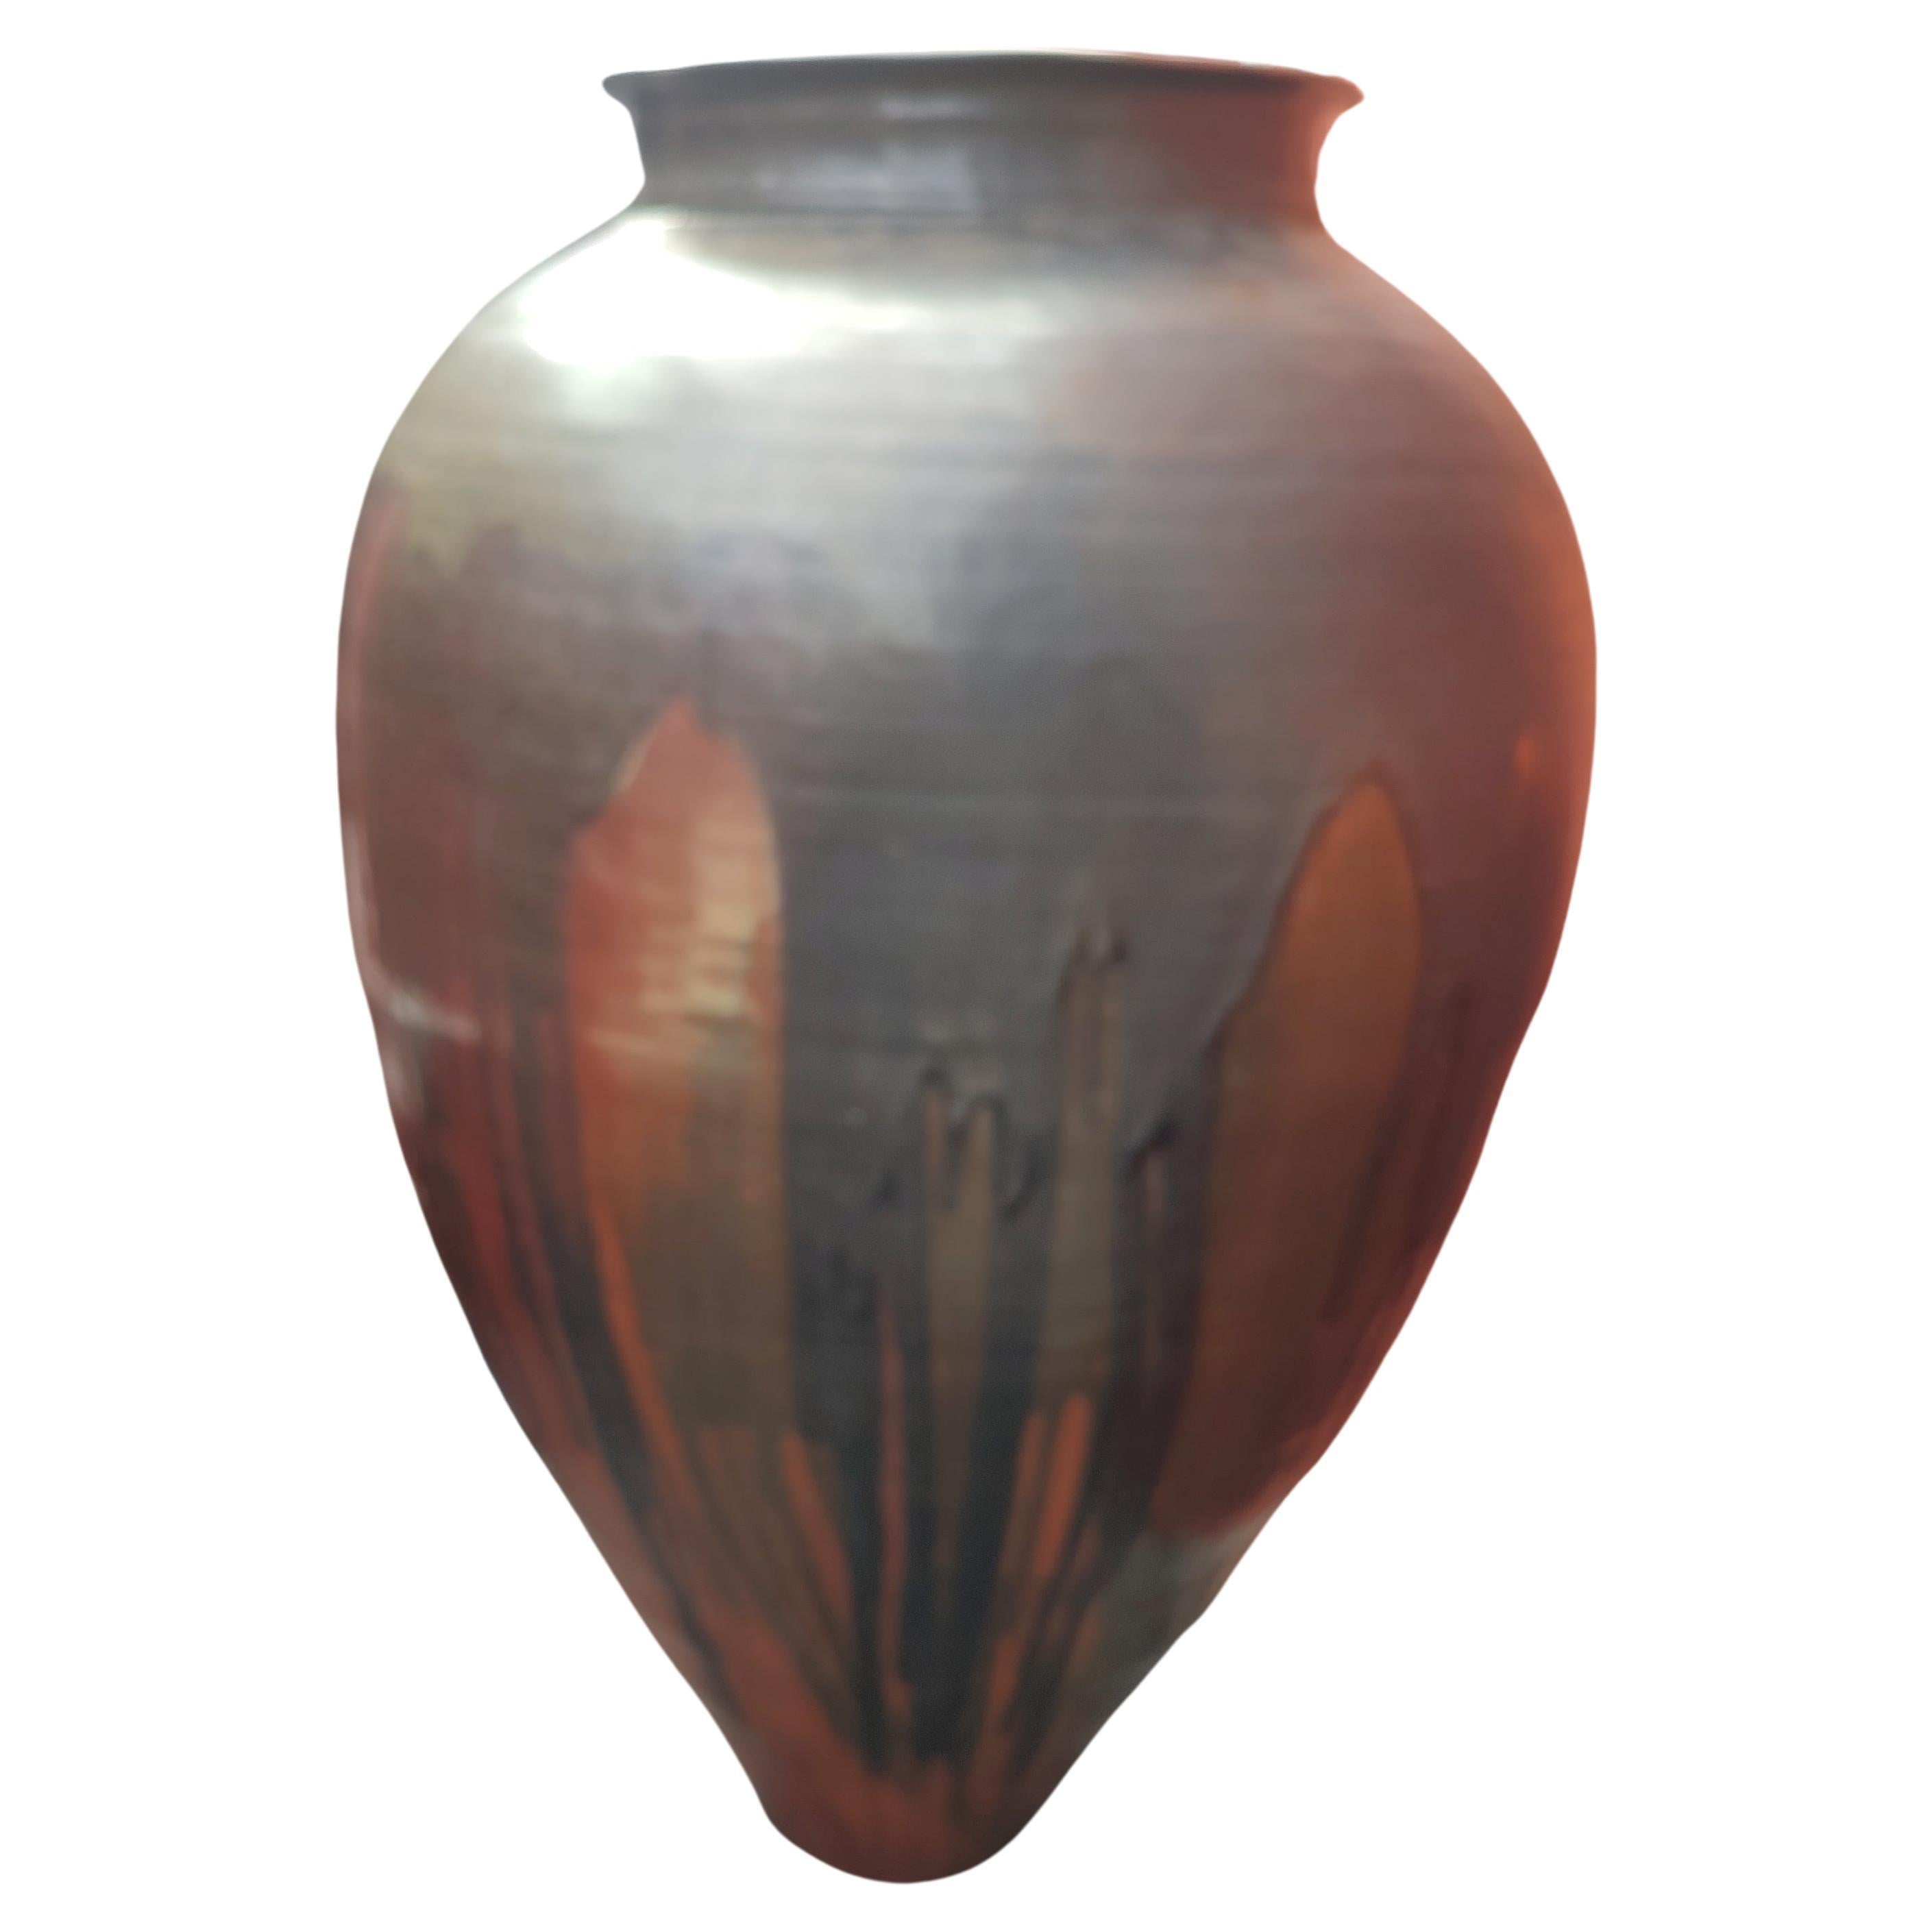 Wunderschöne und massive Vase - Urne, die ein Blickfang in Ihrem Wohn- oder Geschäftsraum sein wird. Fast 4 Fuß hoch und 30 Zoll an der breitesten Stelle in der Mitte bis zu etwa 7 Zoll an der Basis. Eine fantastische orangefarbene und braune